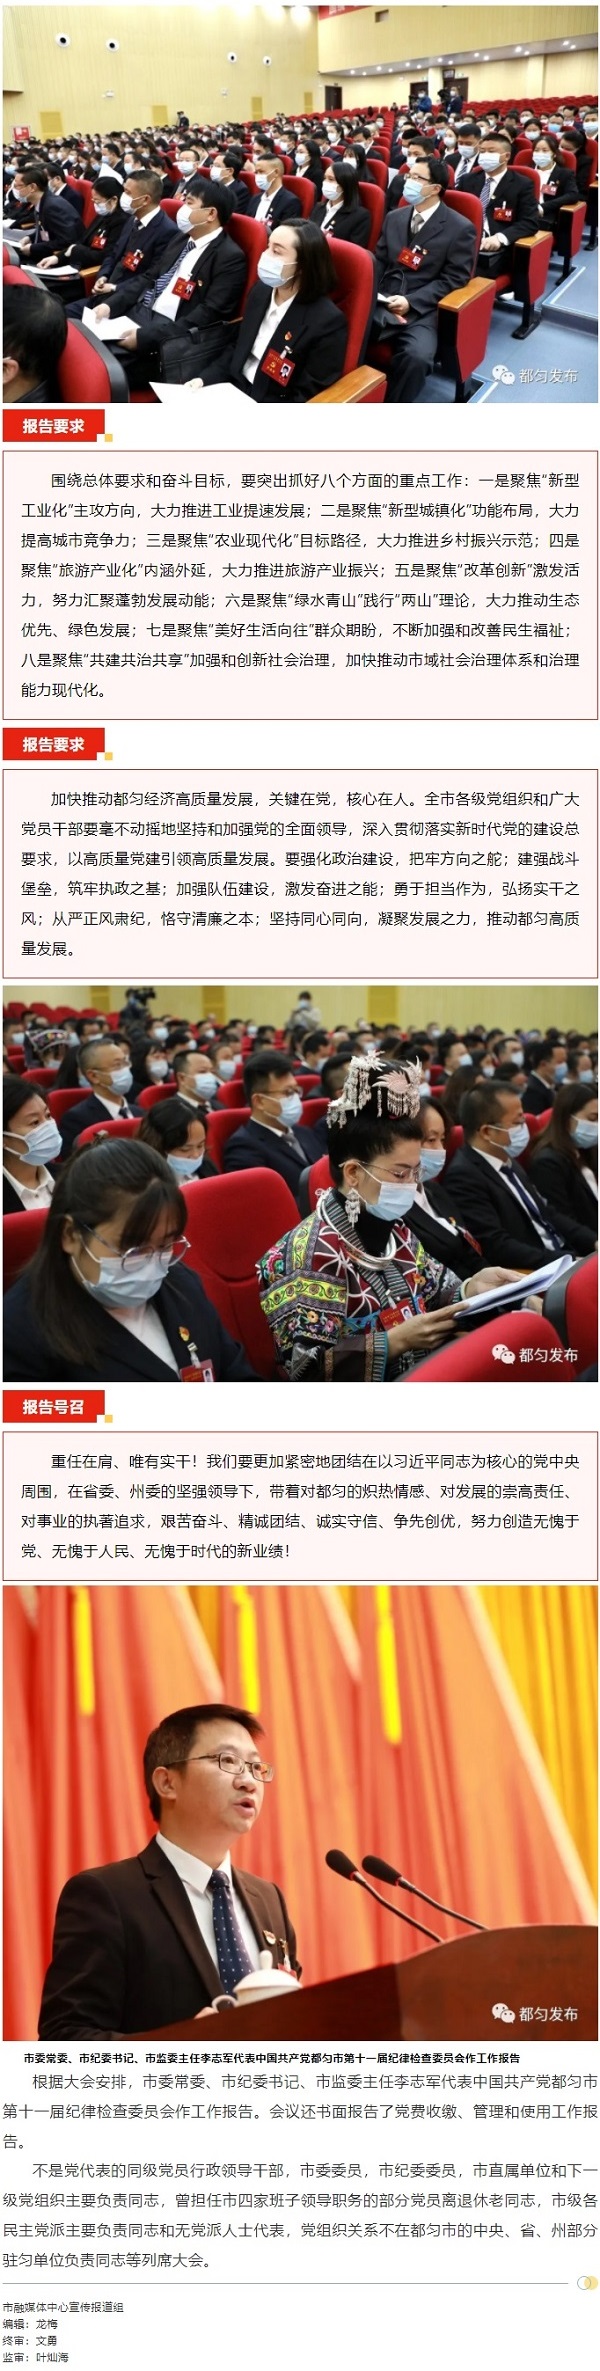 20211025-中国共产党都匀市第十二次代表大会开幕03.jpg